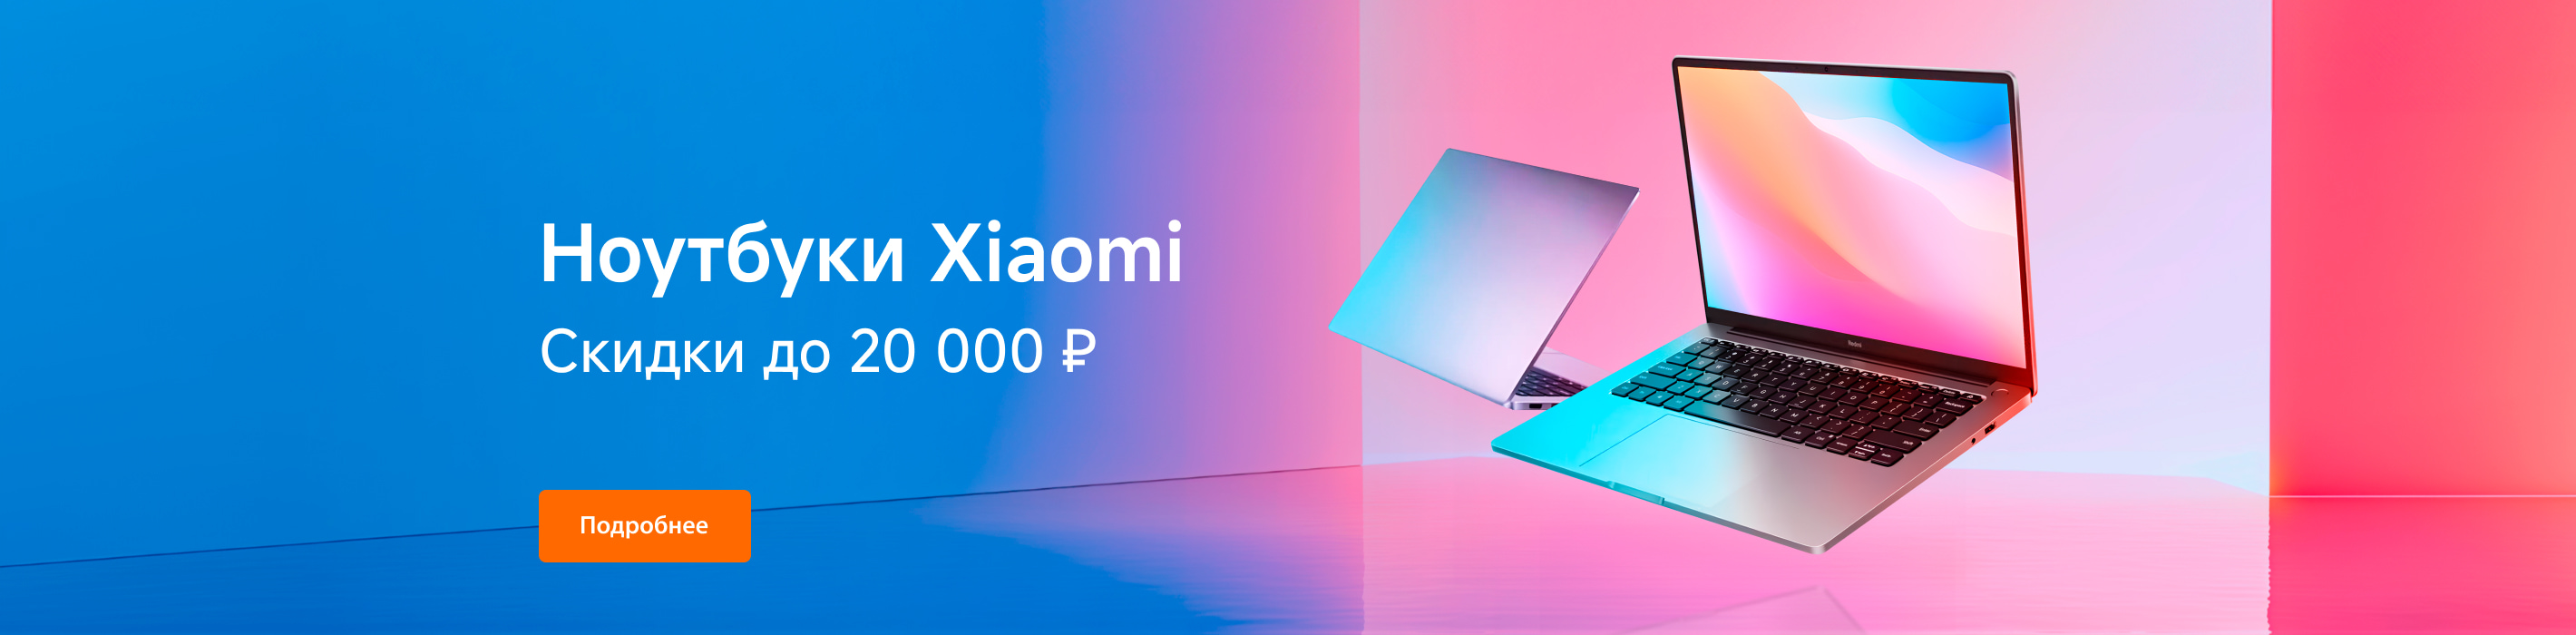 Ноутбуки Xiaomi по выгодной цене